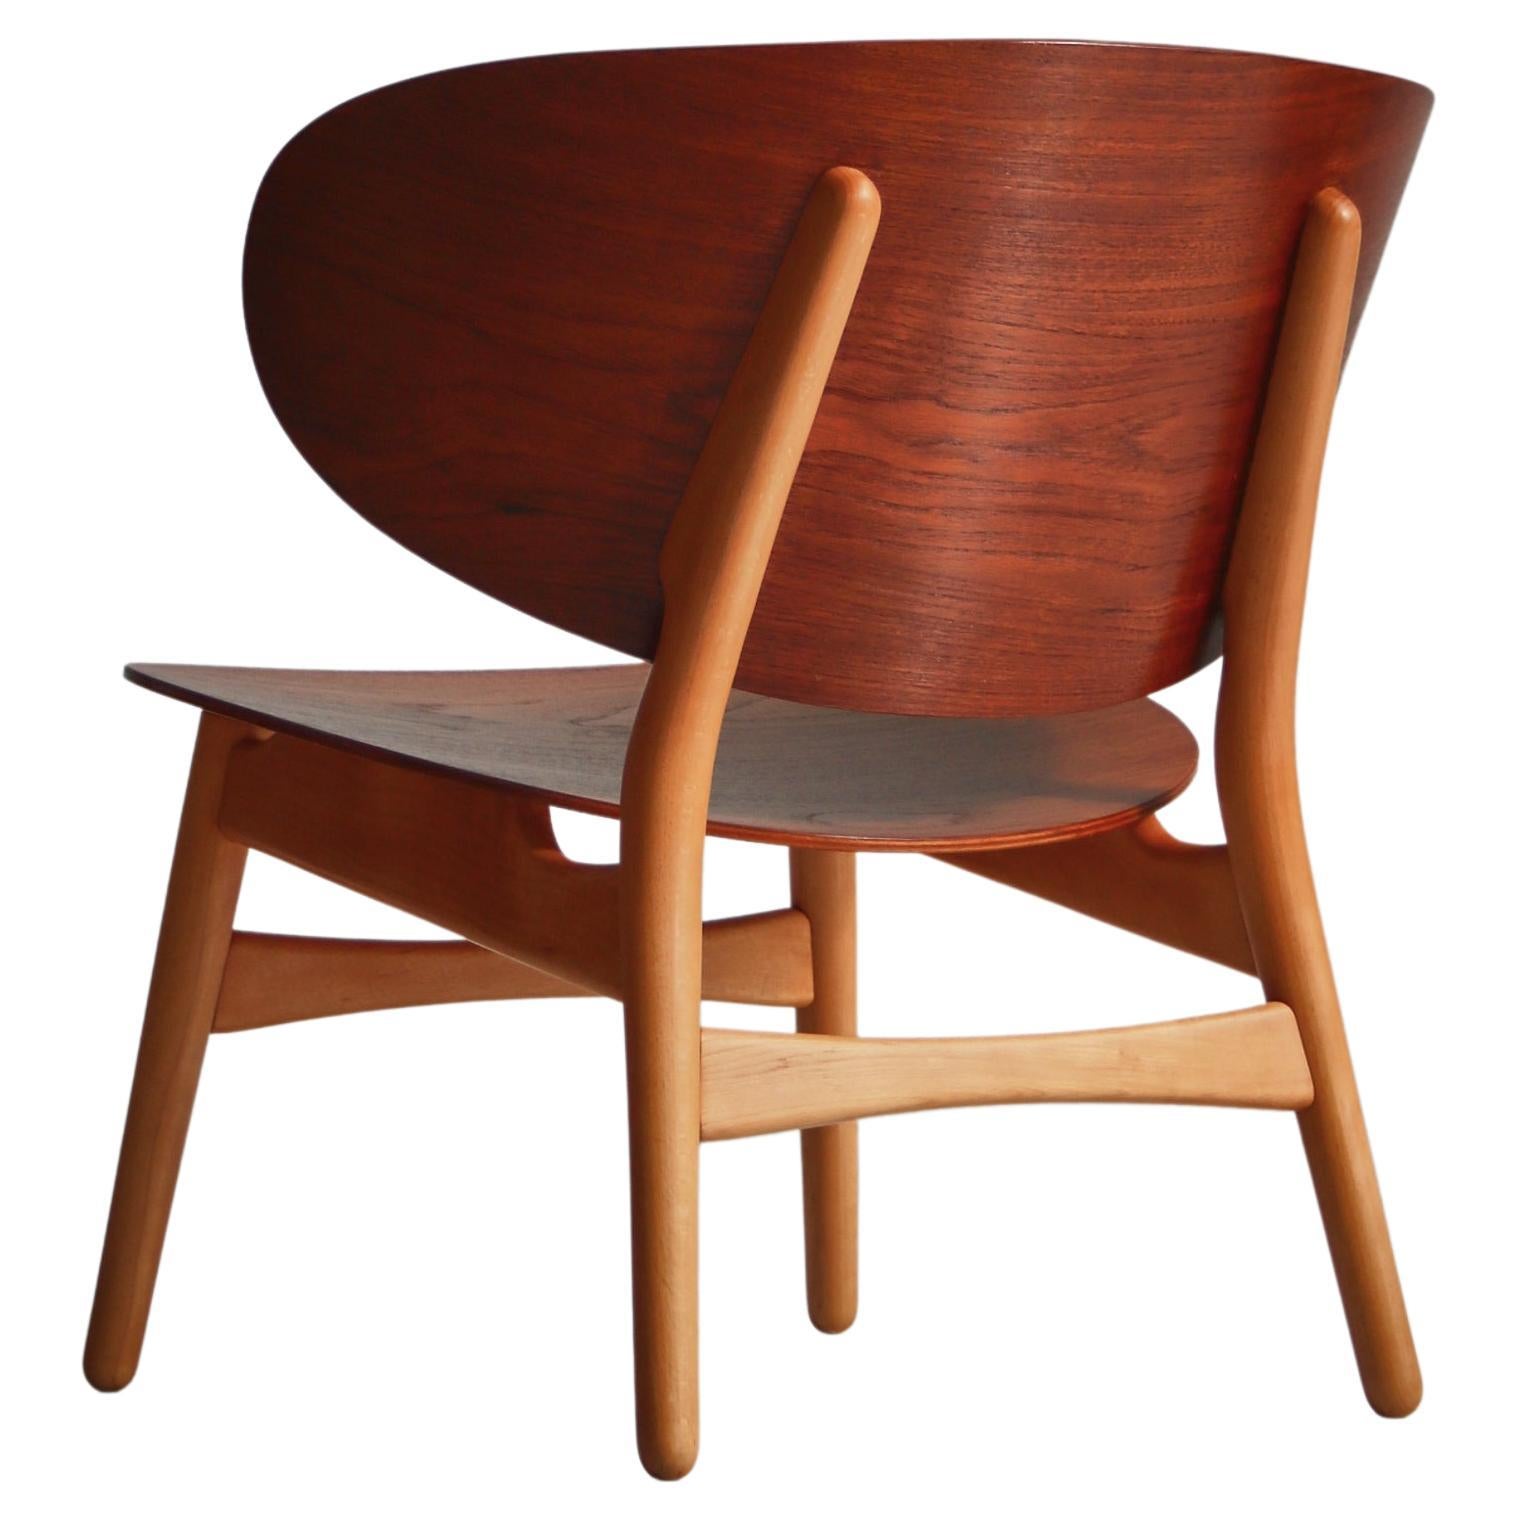 Hans J. Wegner "Venus" Lounge Chair Fritz Hansen Model "FH 1736" in Teak & Beech For Sale